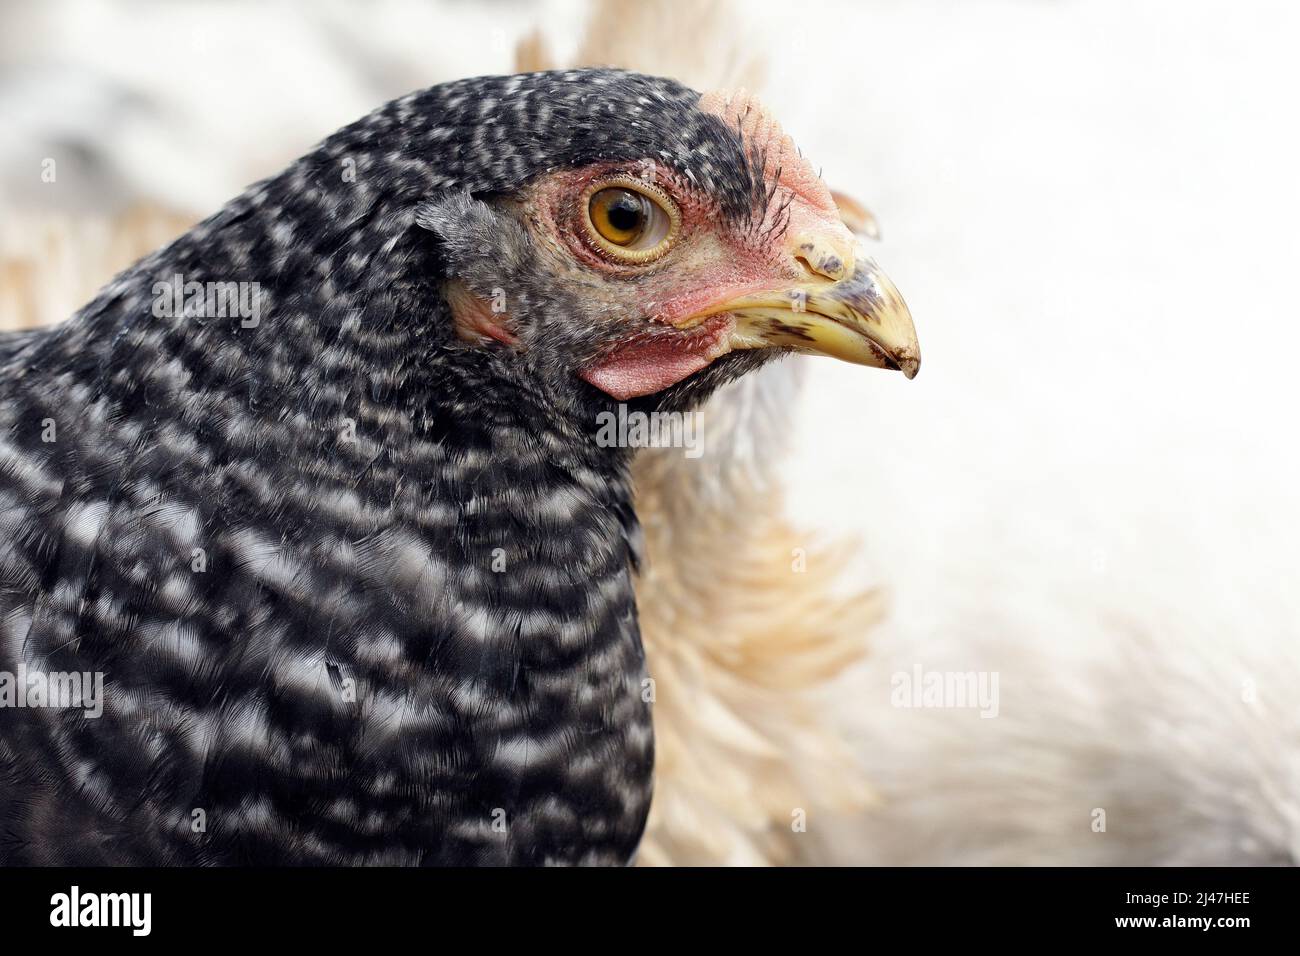 Retrato de pollo negro moteado en una granja durante el verano. Concepto, el cuidado de las aves en la granja tradicional, aves de corral orgánicas y huevos. Foto de stock